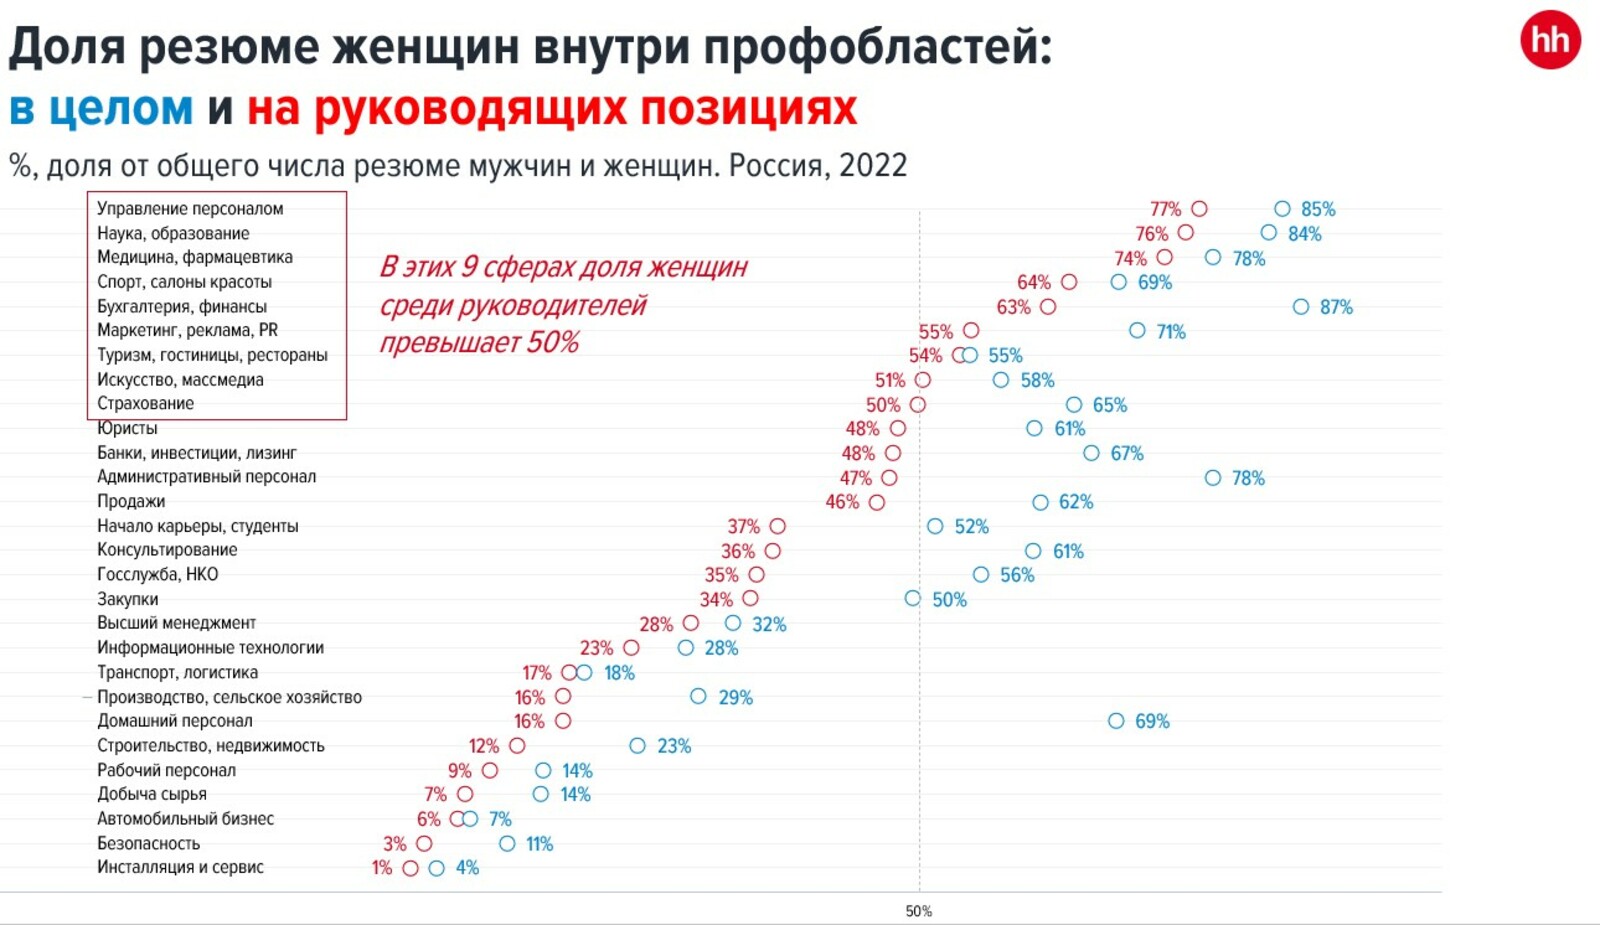 В России в два раза выросло количество сфер, где женщины занимают руководящие позиции